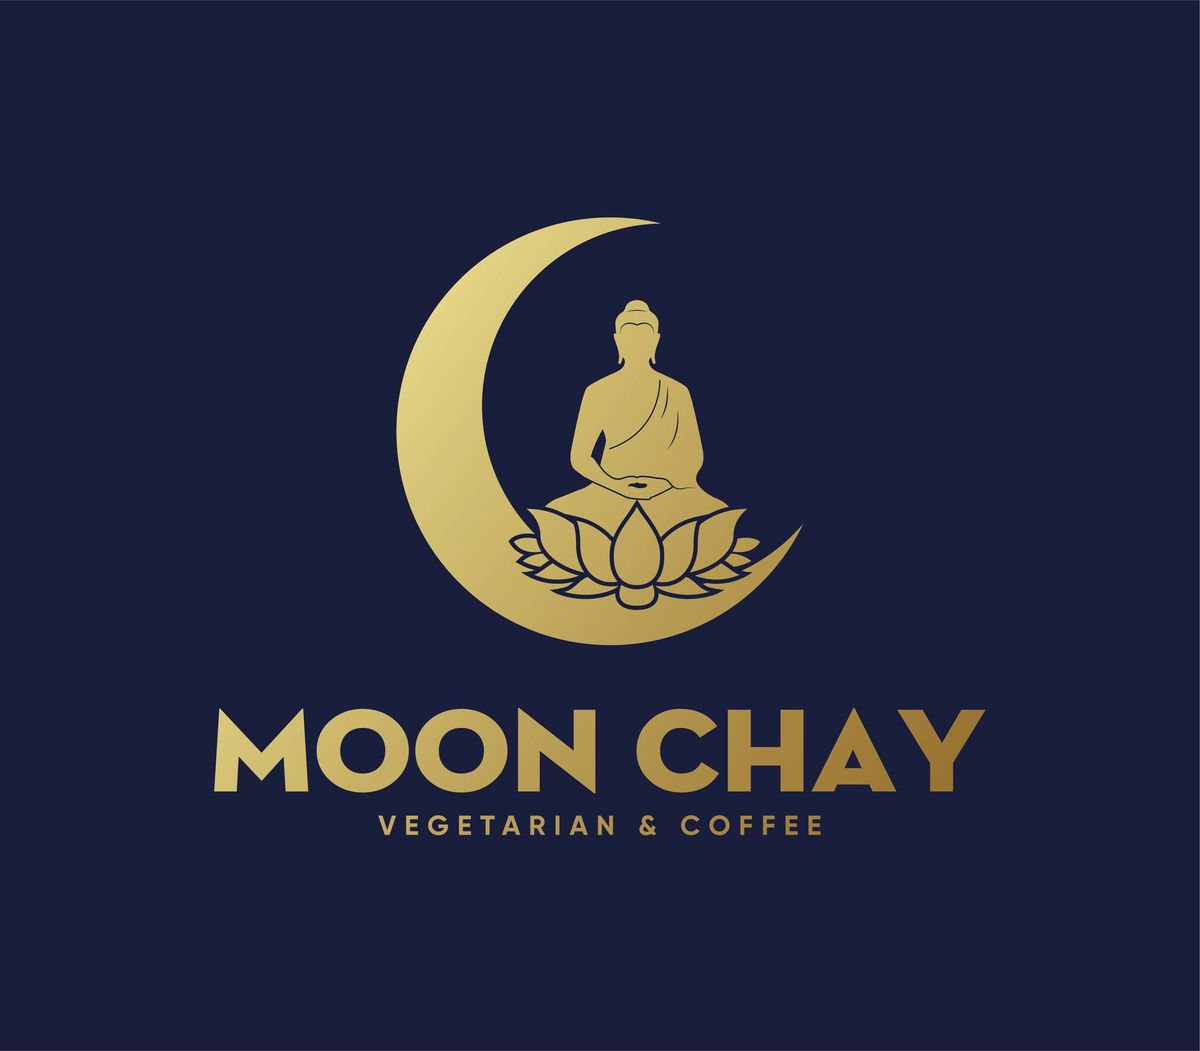 MoonChay Opening Soon